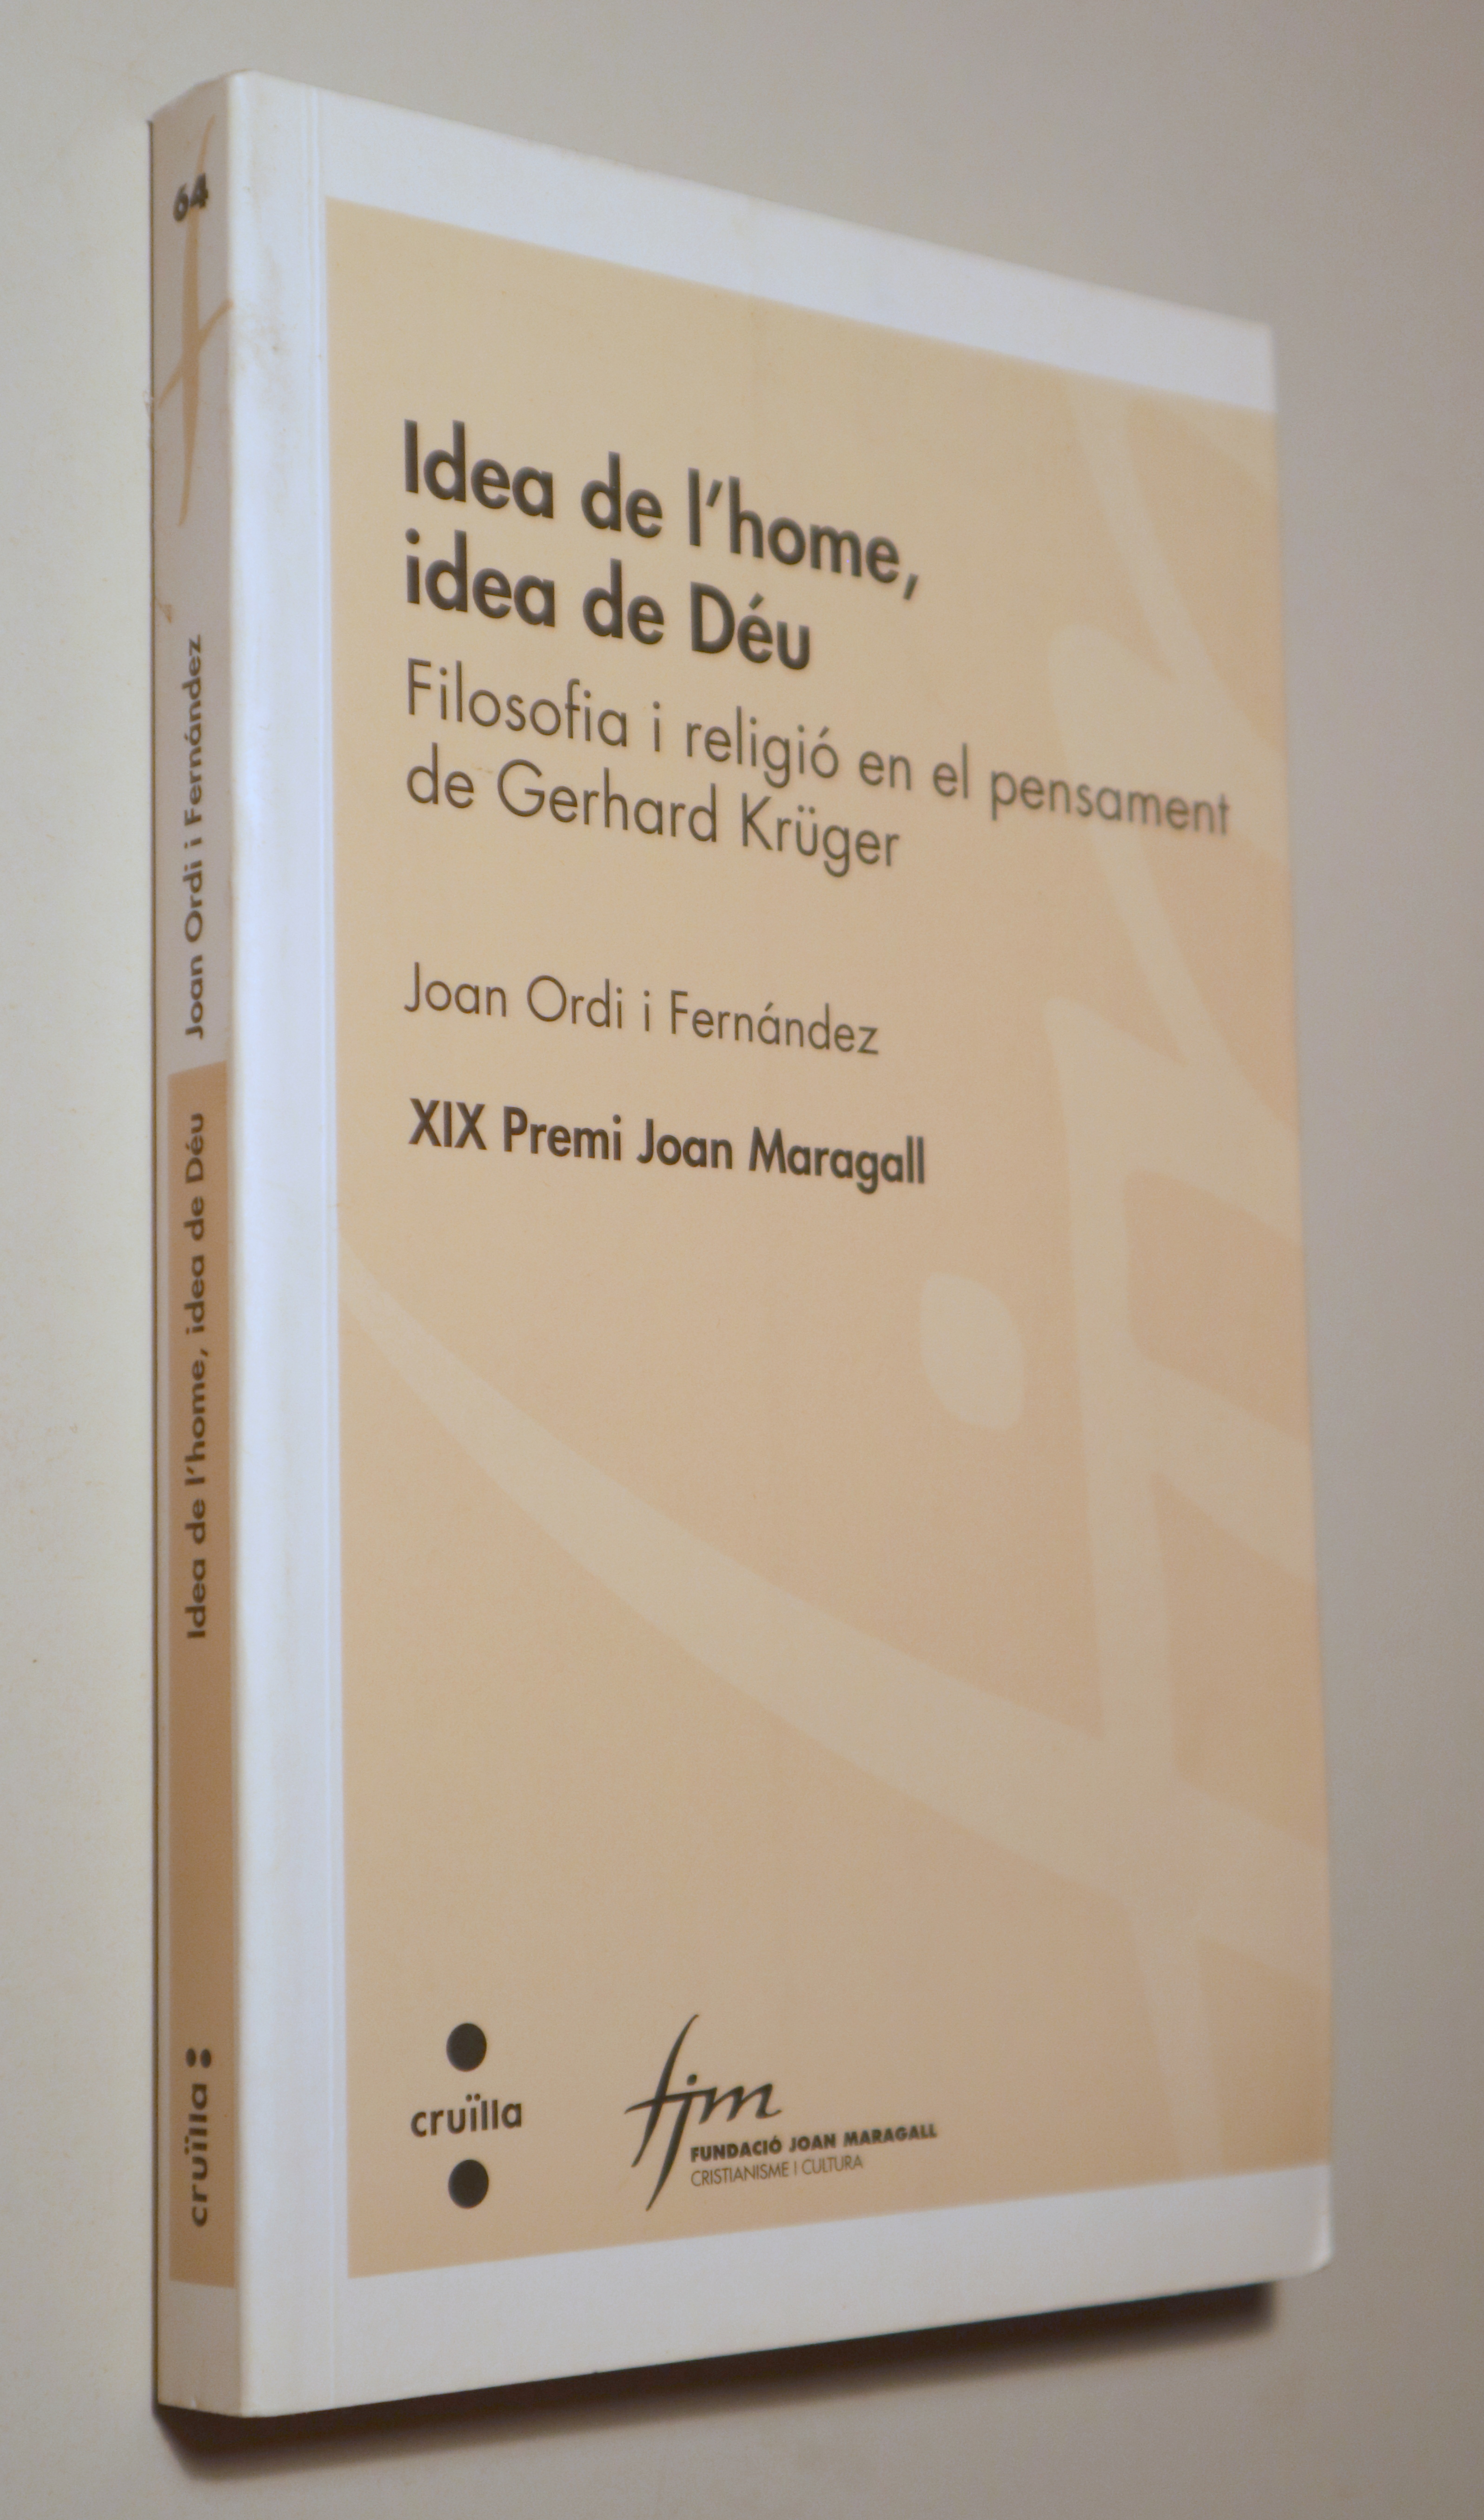 IDEA DE L'HOME, IDEA DE DÉU. Filosofia i religió en el pensament de Gerhard Krüger - Barcelona 2009 - 1ª ed.